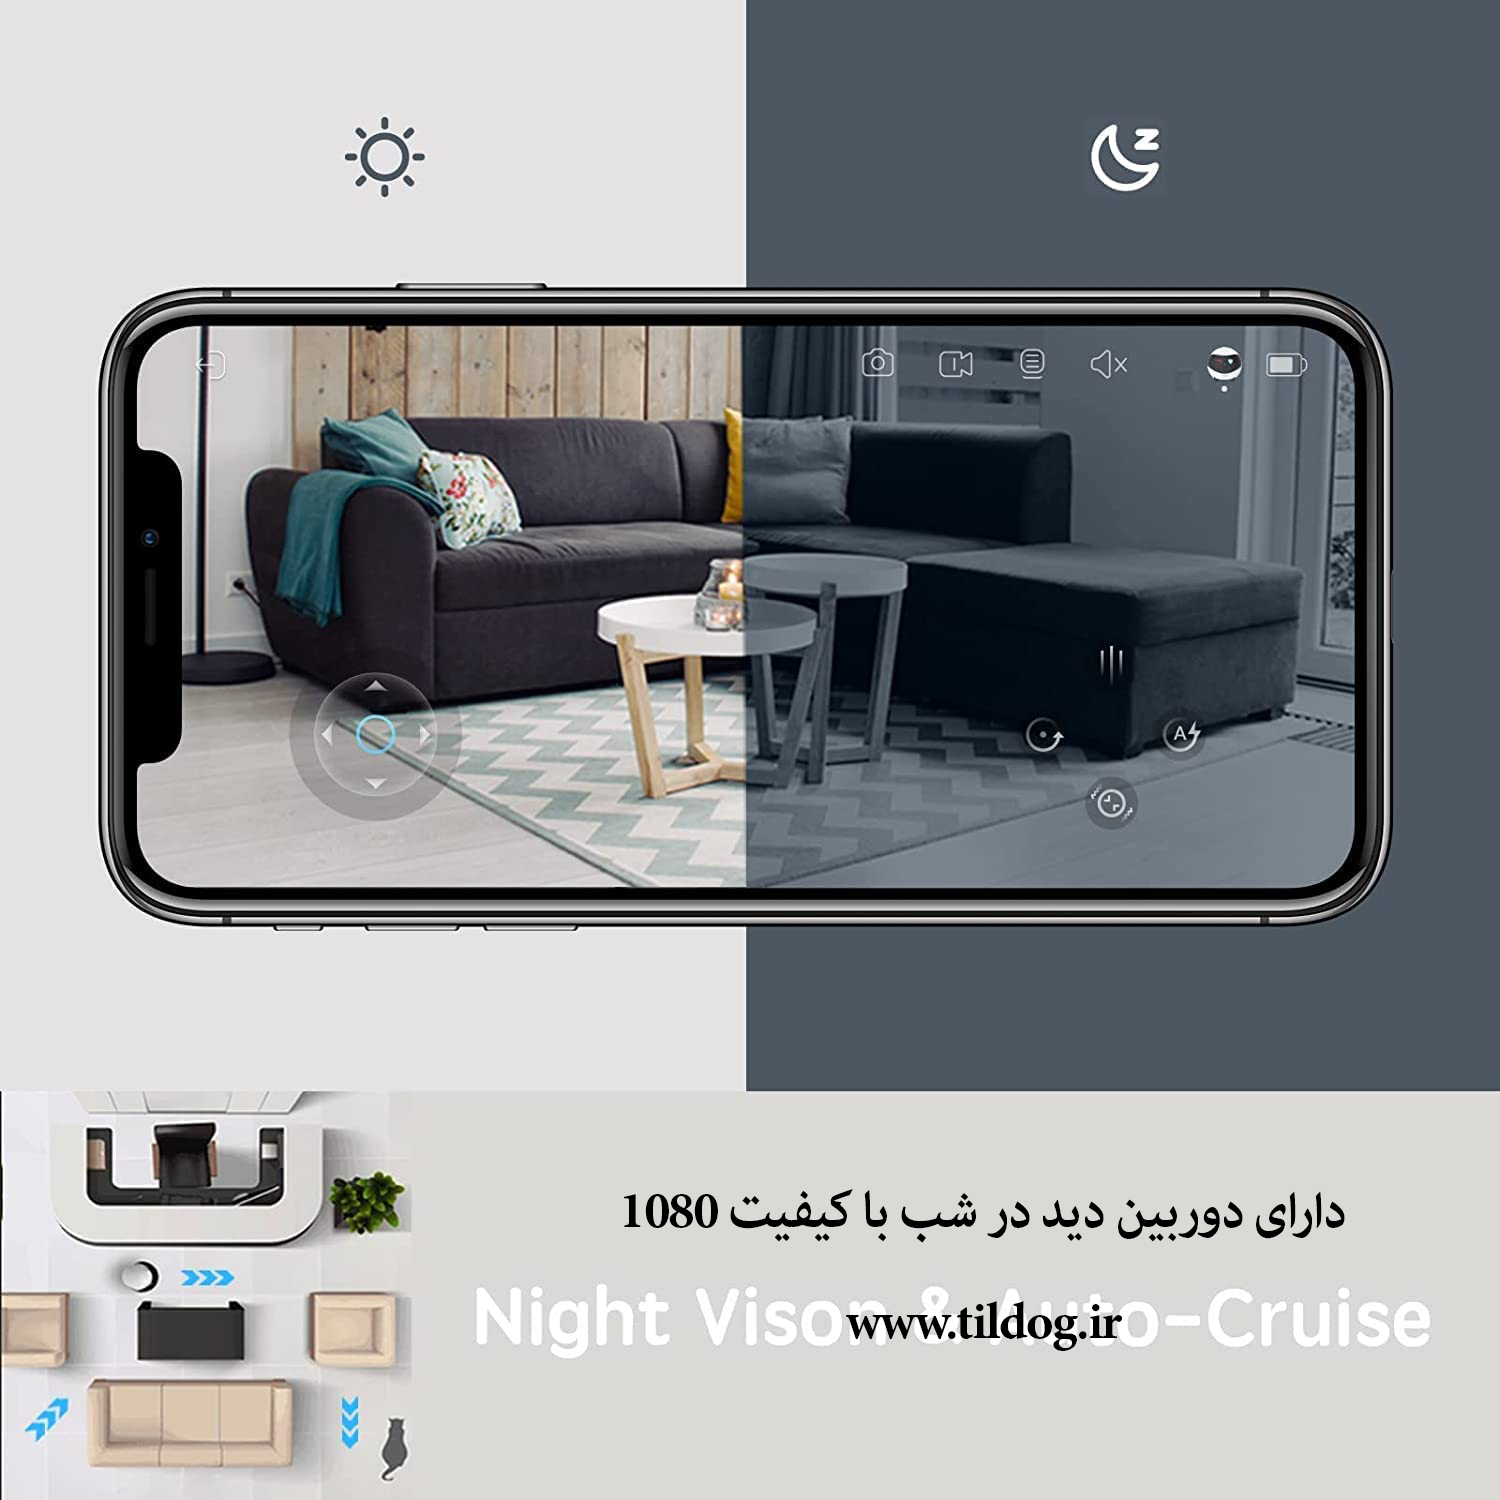 باضبط ویدیویی 24 ساعته ، تشخیص حرکت و دید در شب(مادون قرمز) با کیفیت 1080P، هر گوشه از خانه شما را زیر نظر دارد